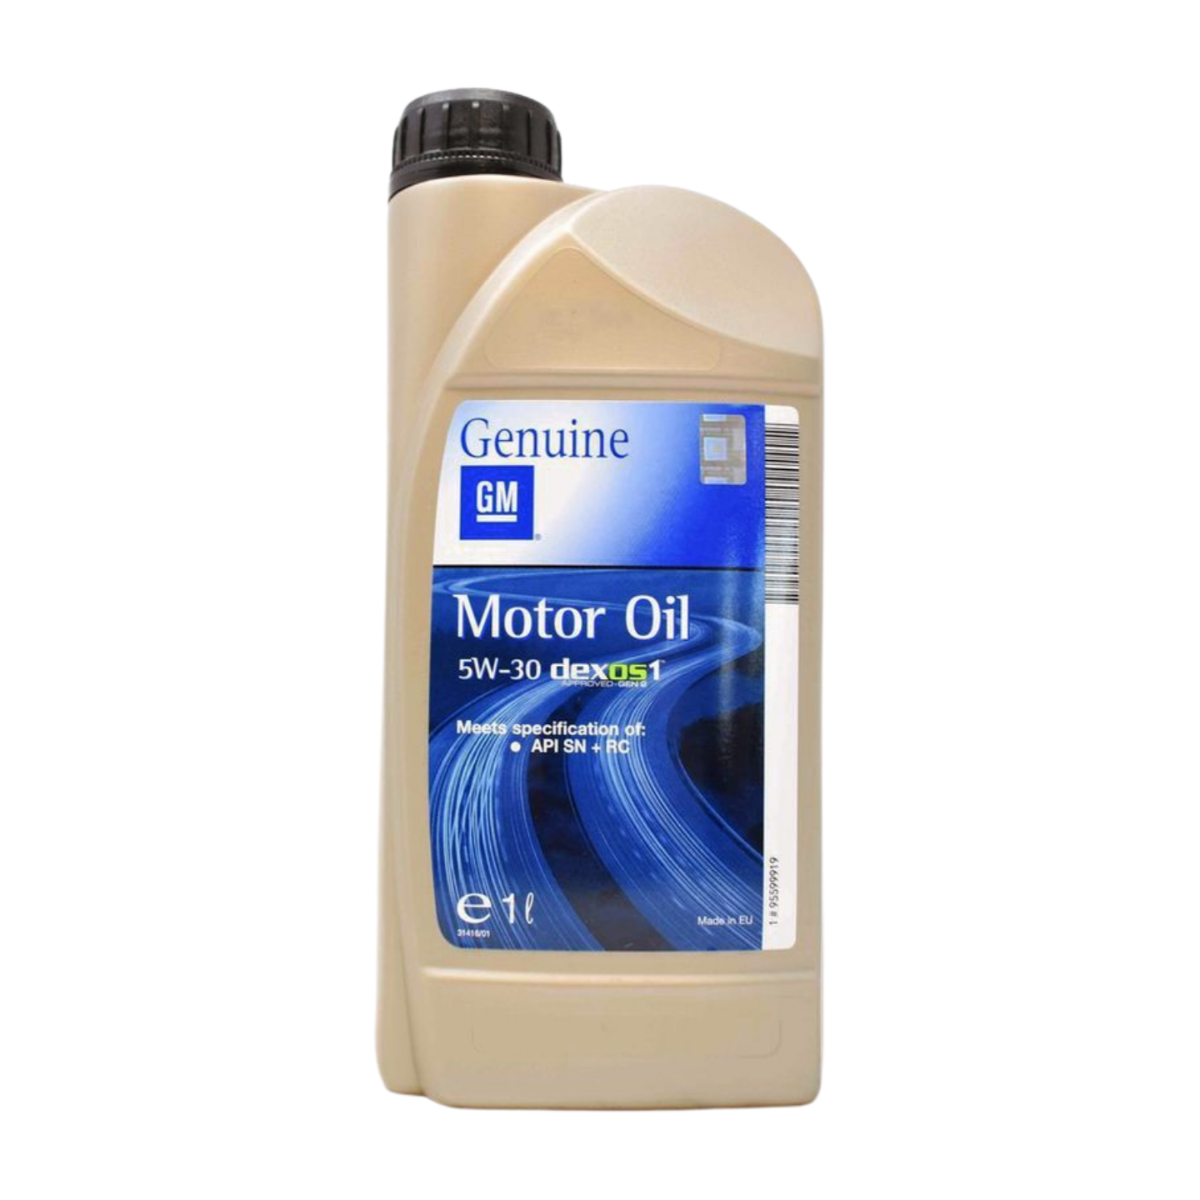 Buy GM Engine Oil 5W-30 DEXOS 1 GEN 3 at ATO24 ❗